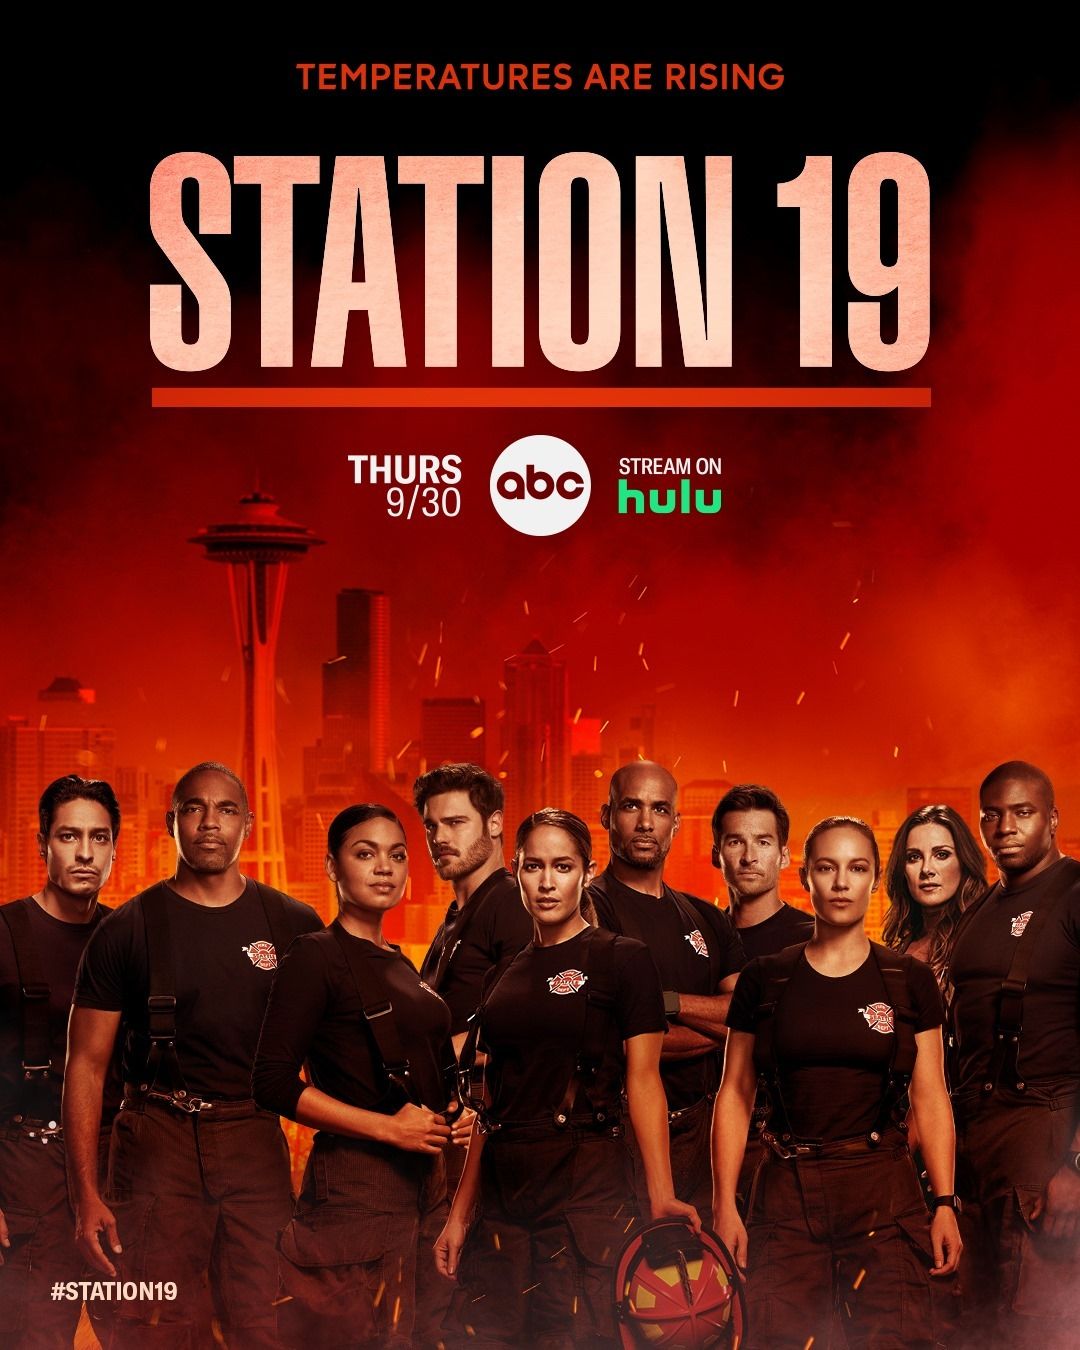 Station 19 (2018) CBR